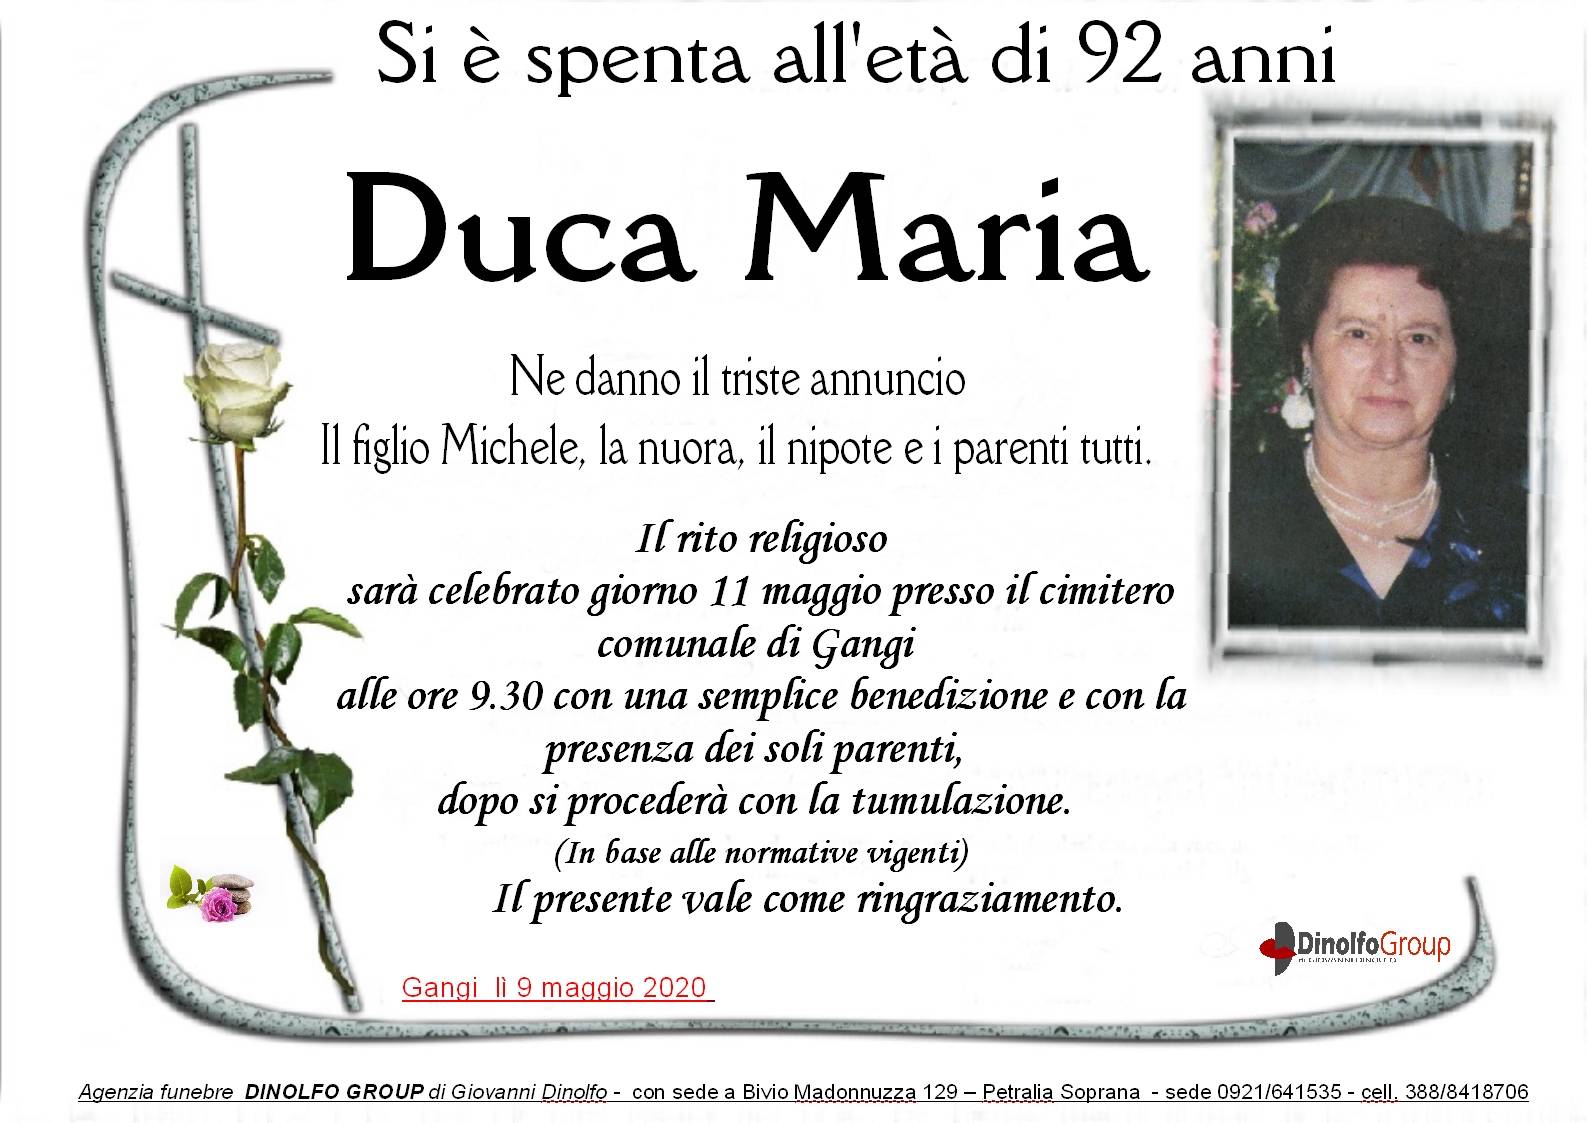 Maria Duca